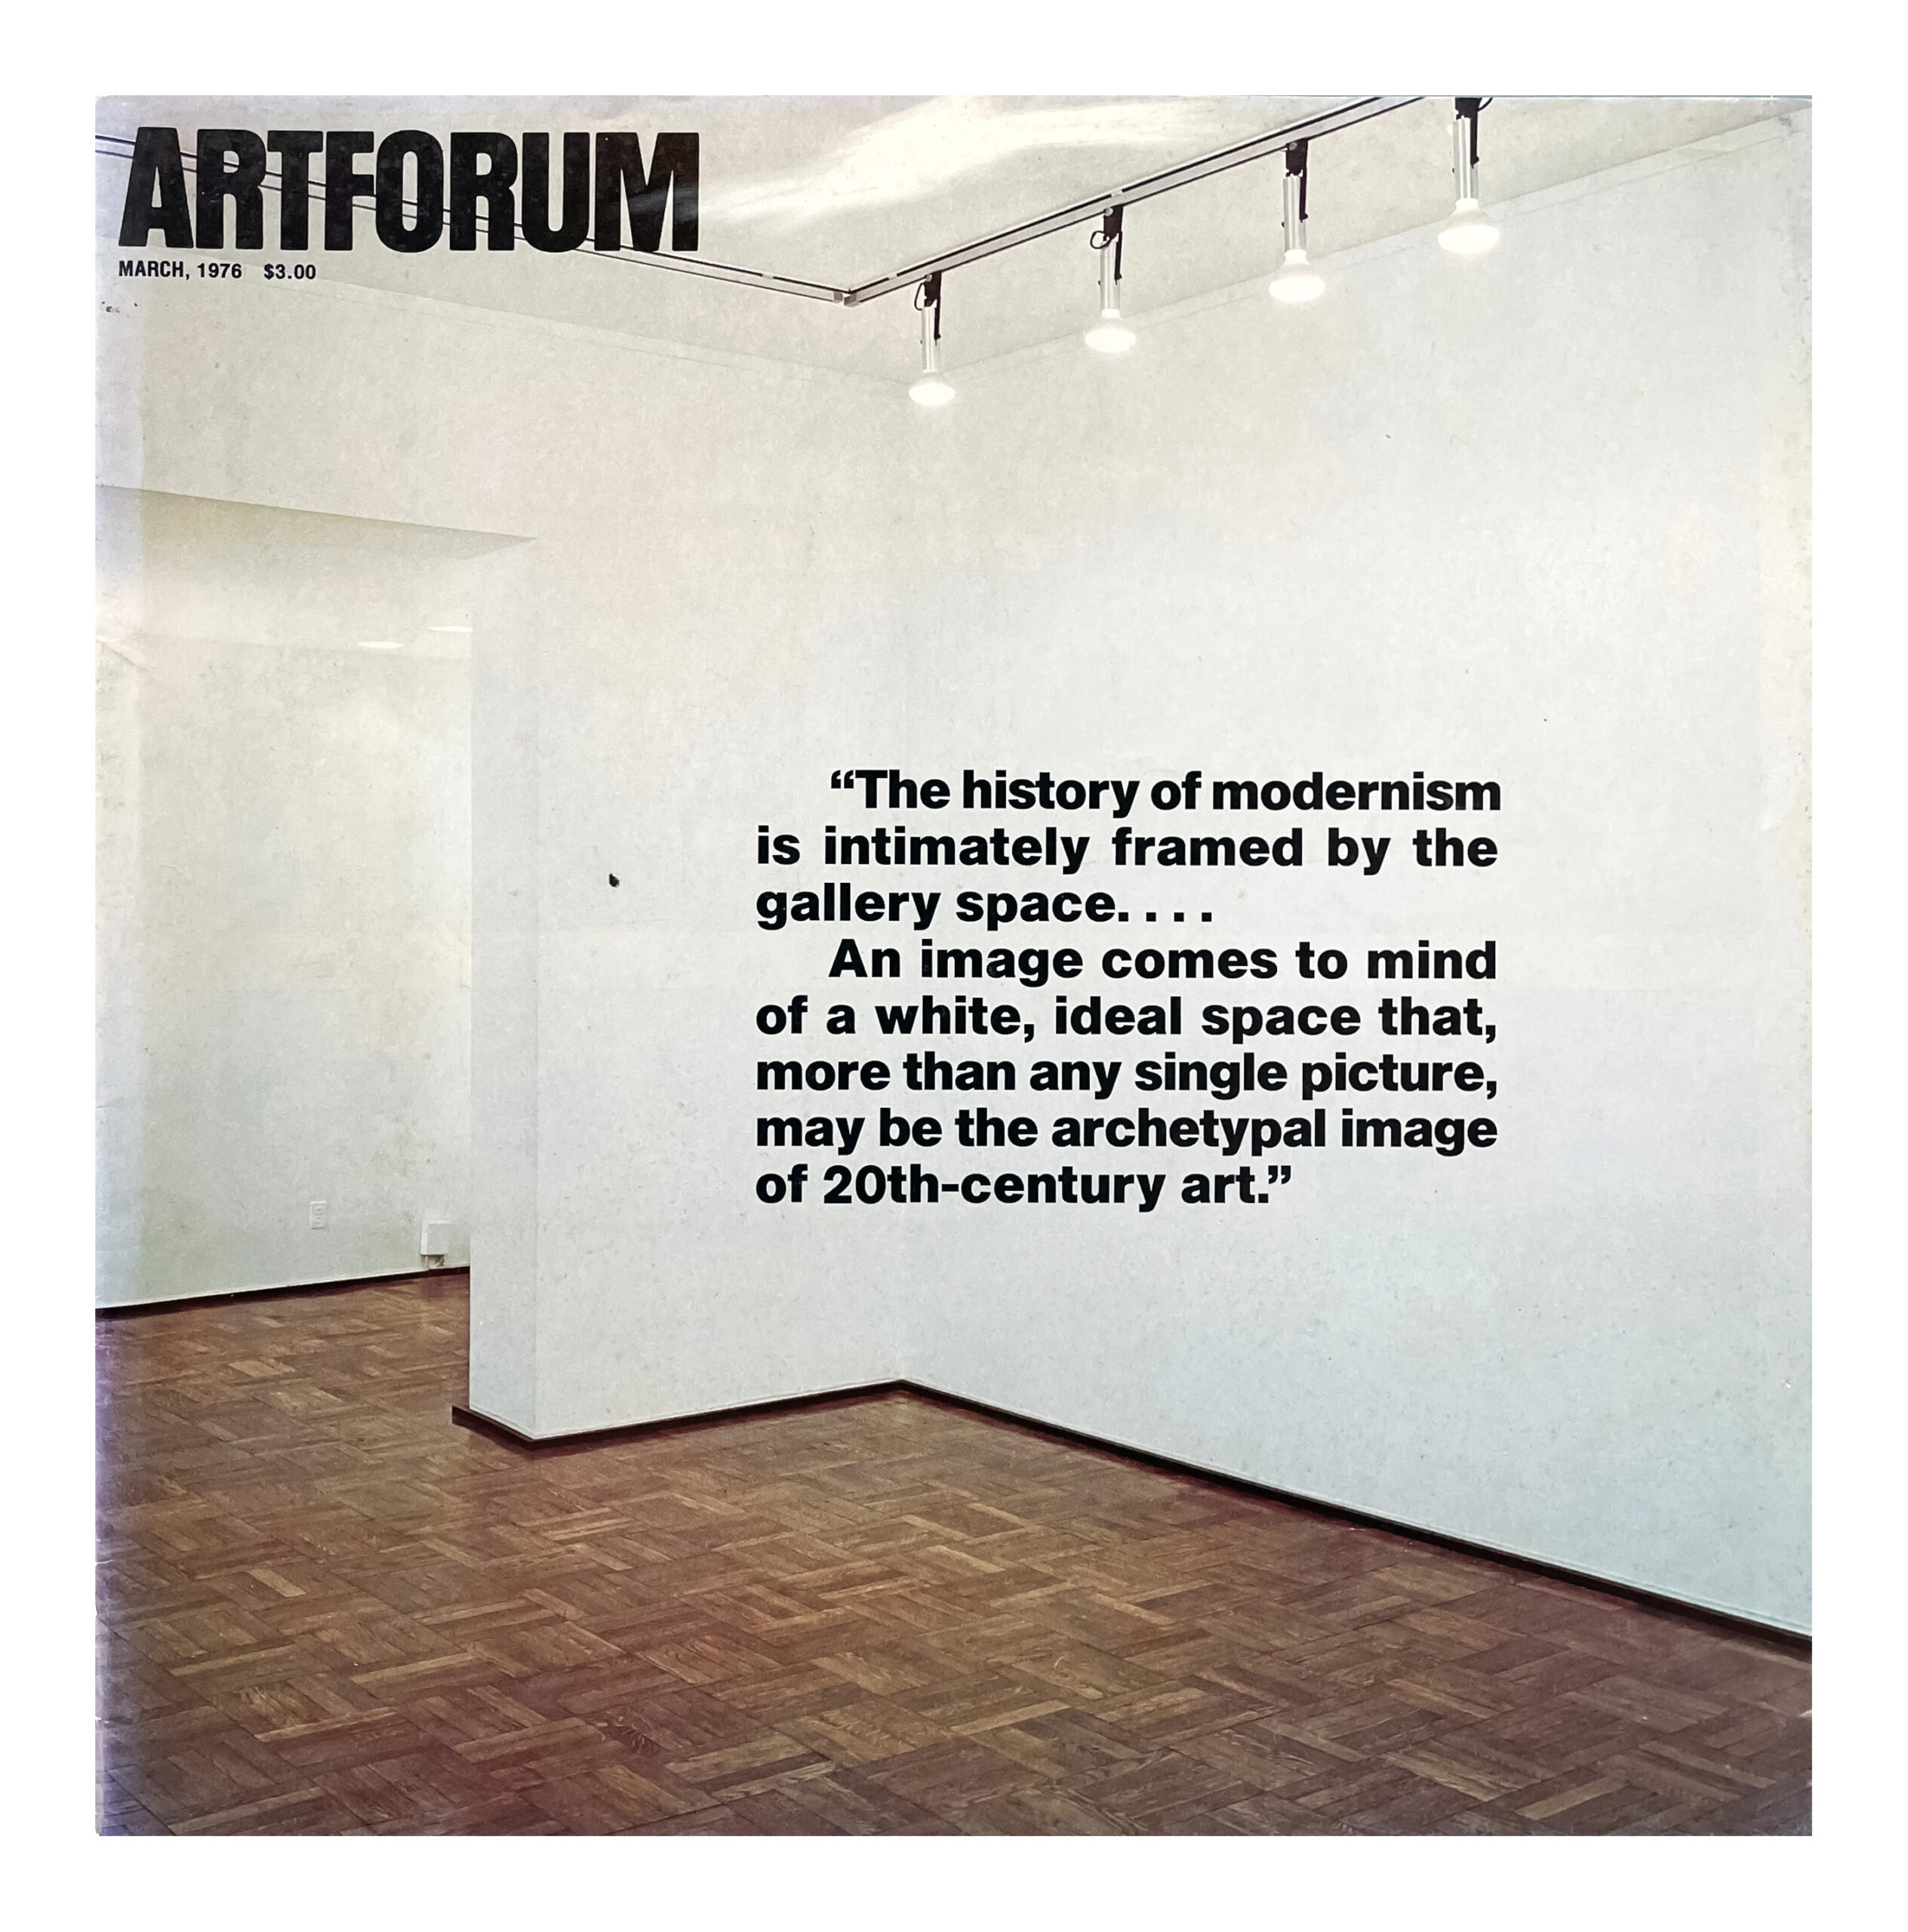 Artforum Vol. 14 No. 7, March 1976